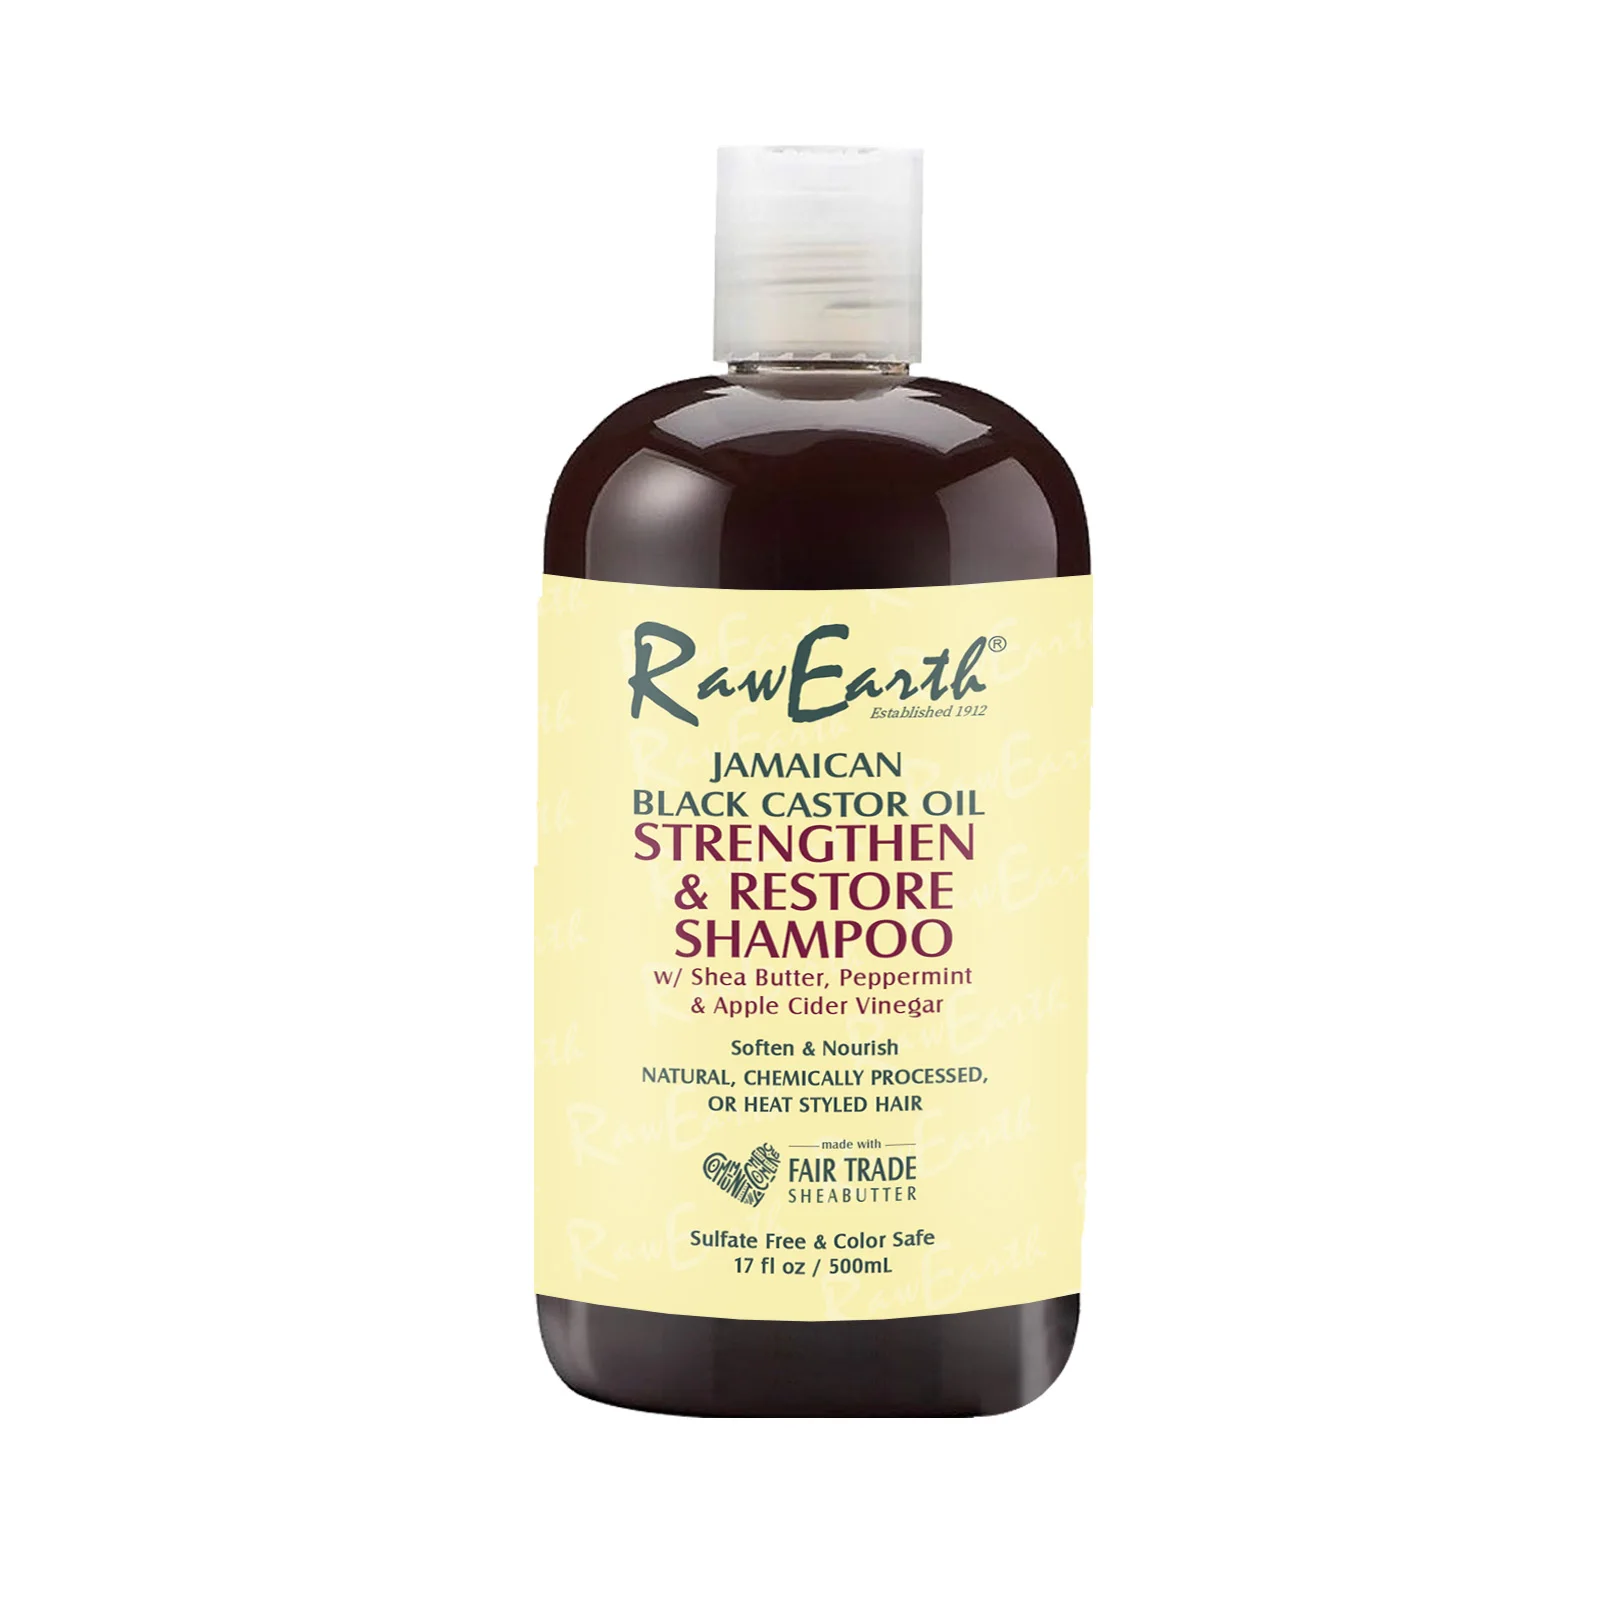 

Raw Earth Moisturize and Grow Healthy Hair Jamaican Black Castor Oil Shampoo